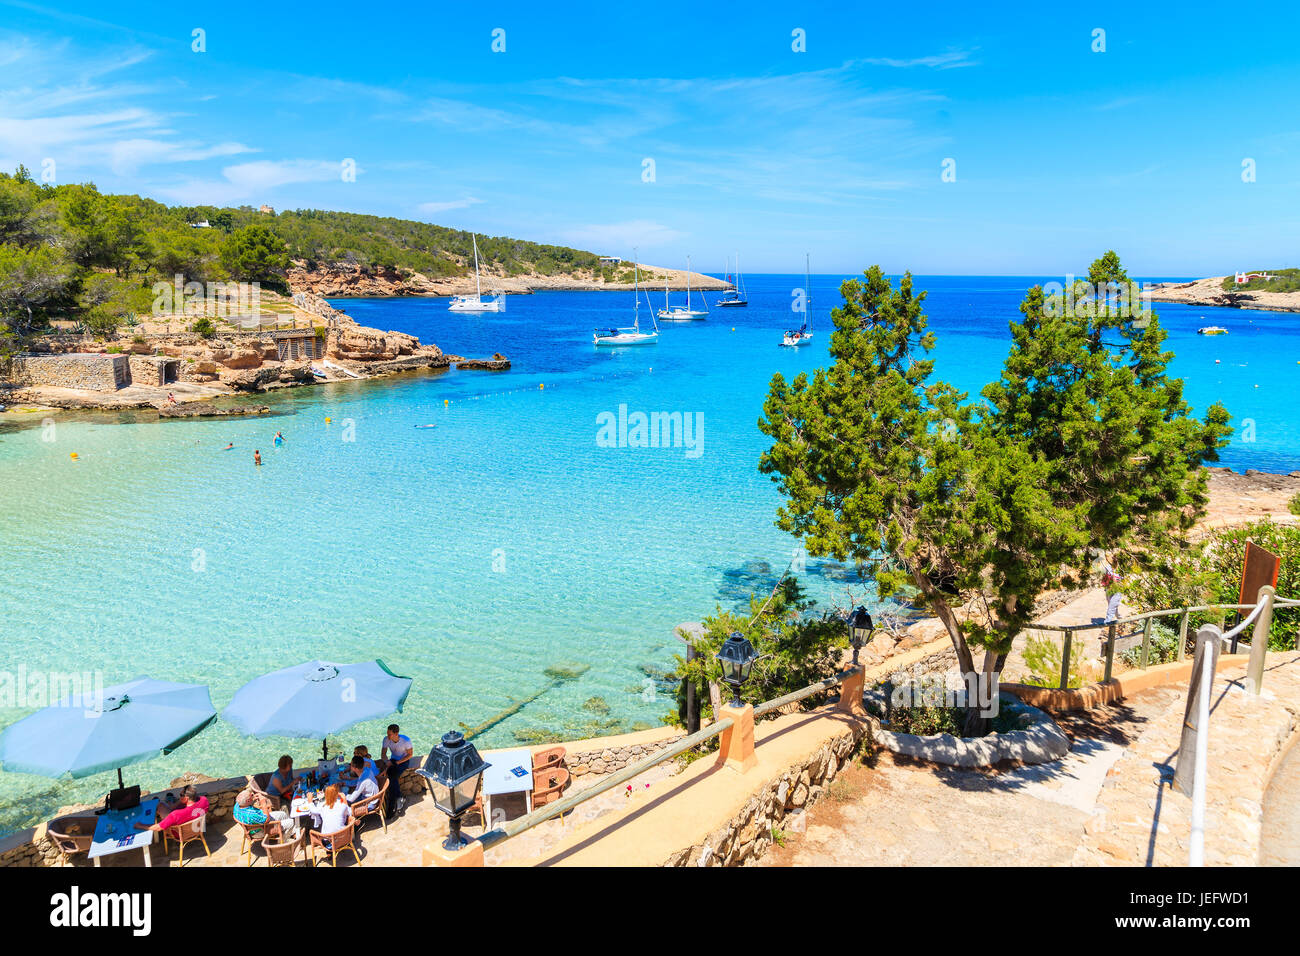 La baie de Cala PORTINATX, IBIZA ISLAND - 16 MAI 2017 : des gens assis dans le restaurant de rive de la baie de Cala Portinatx, Ibiza island, Espagne. Banque D'Images